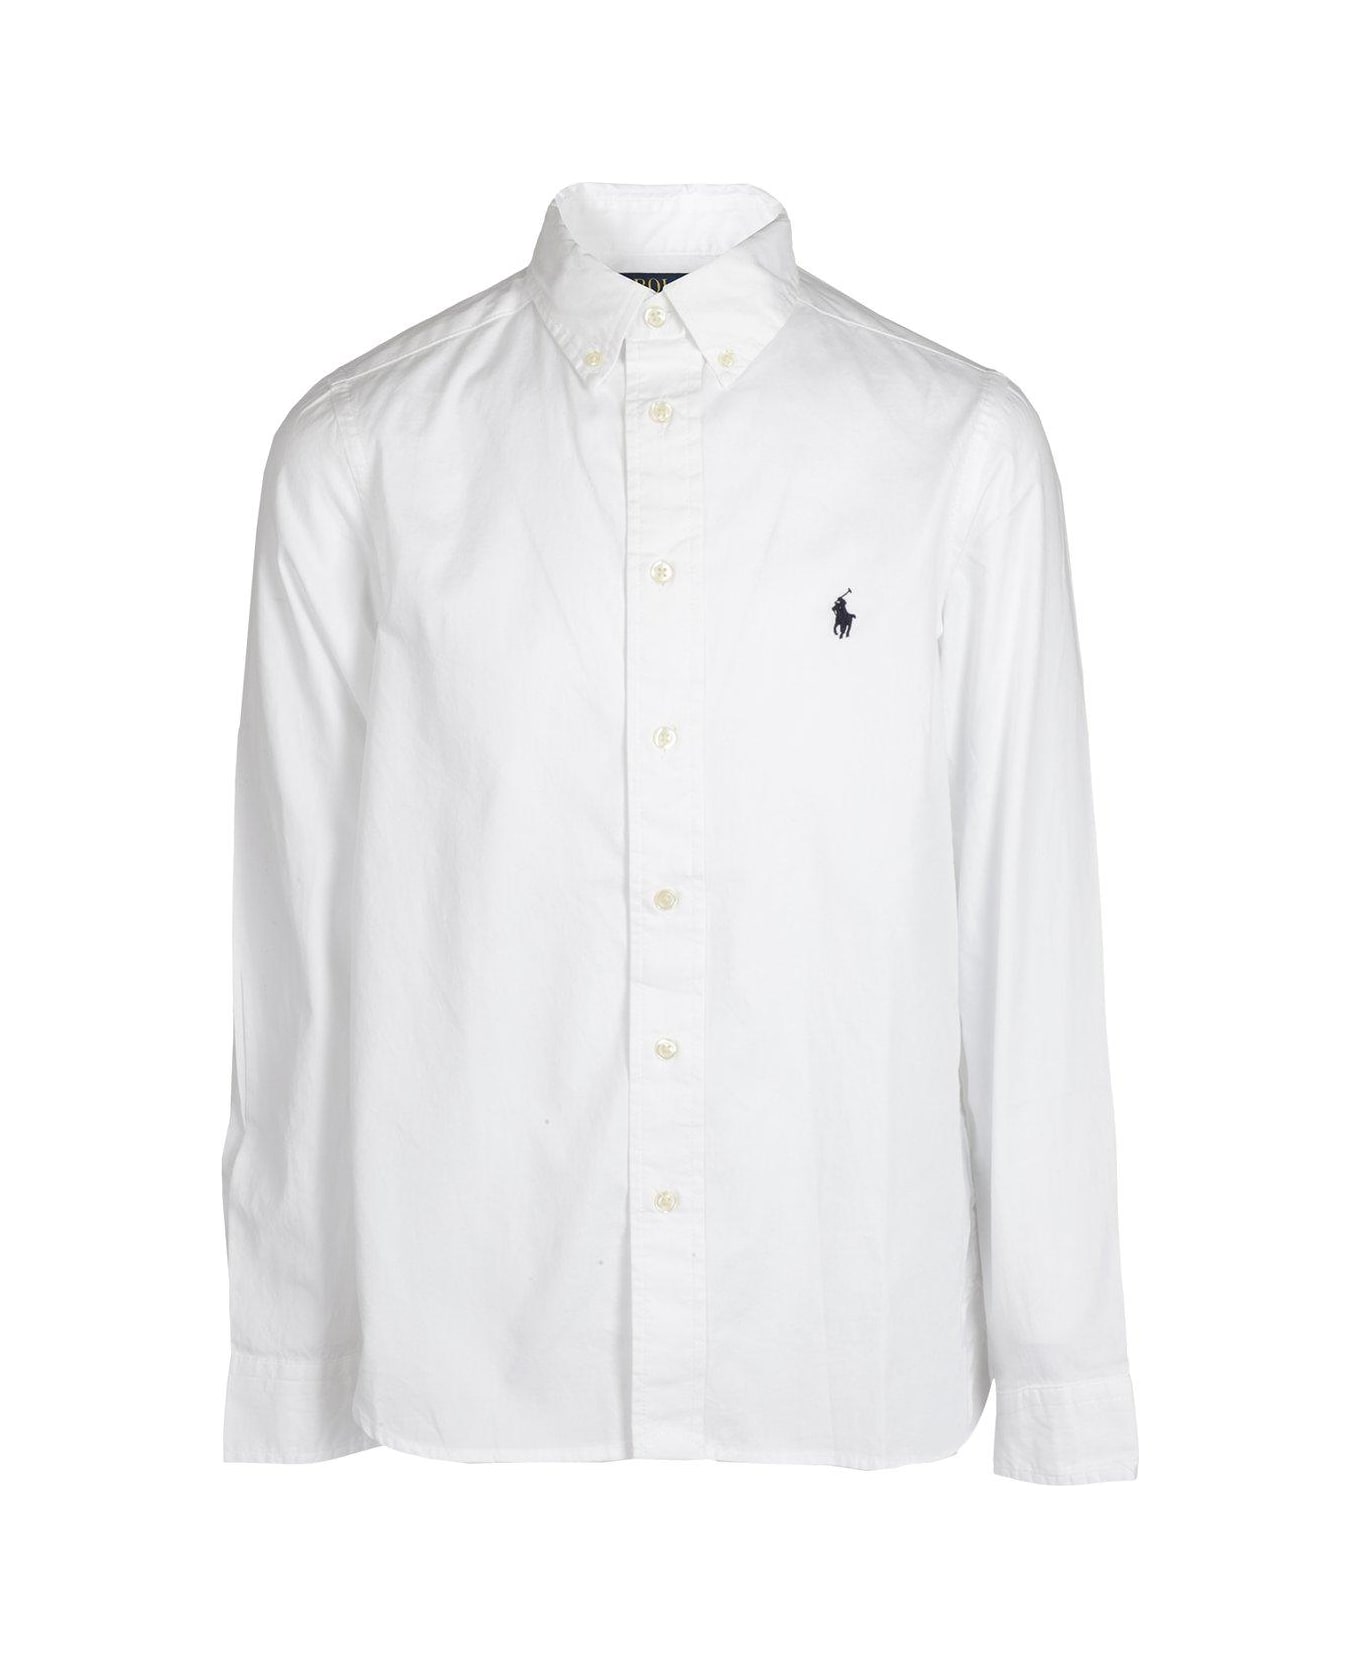 Ralph Lauren Logo Embroidered Long Sleeved Shirt - WHITE